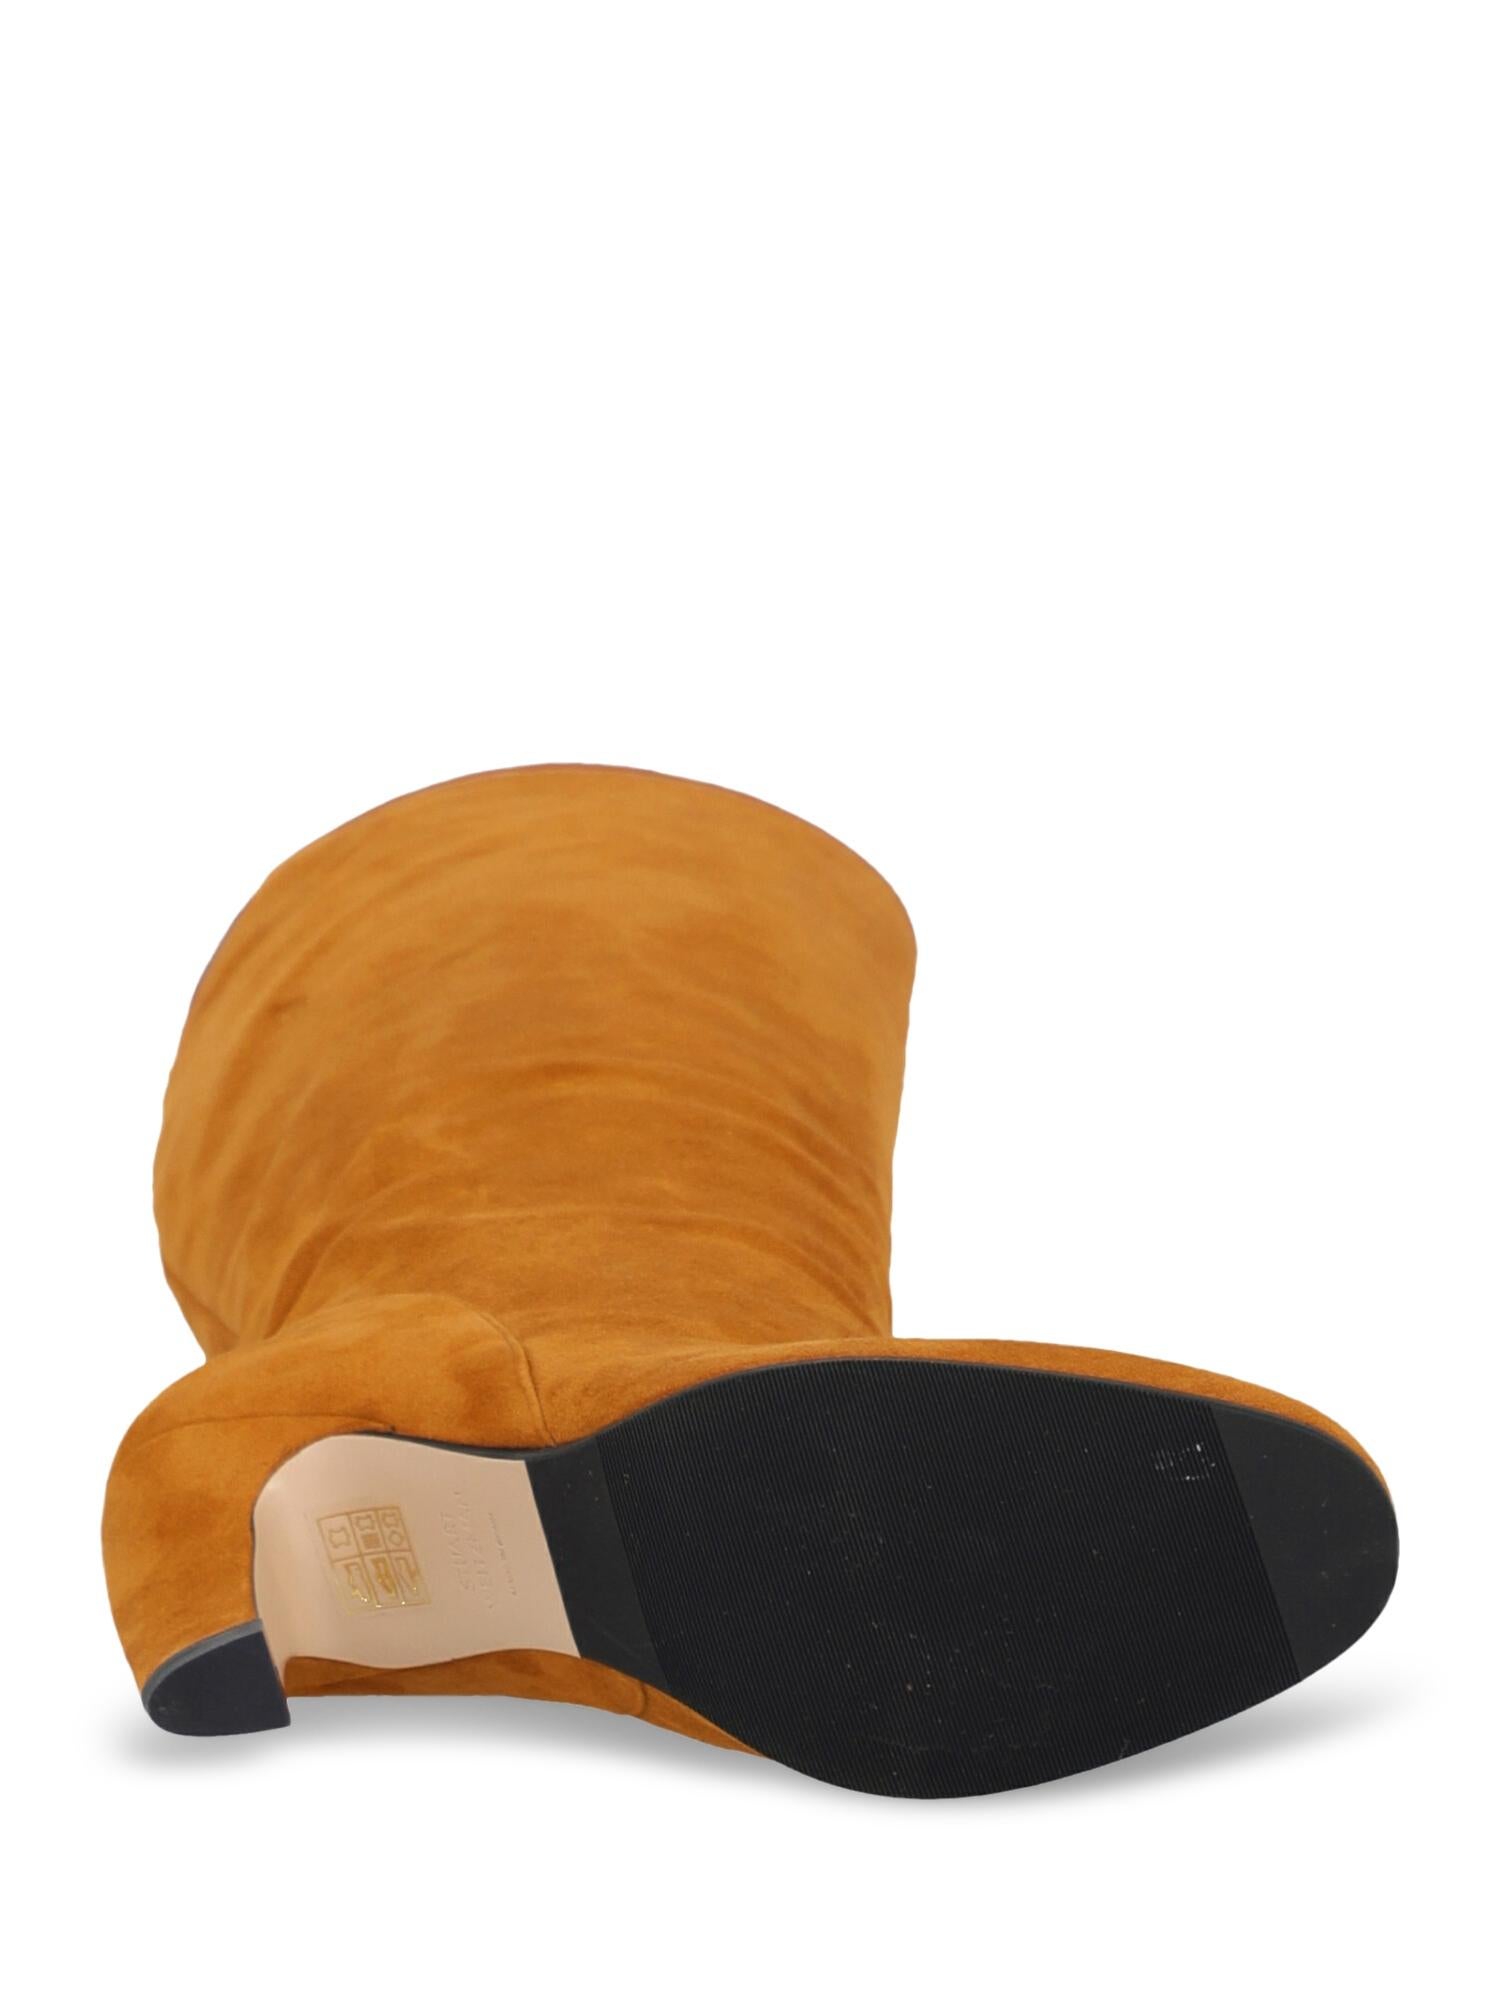 Orange Stuart Weitzman Woman Boots Camel Color Leather IT 37 For Sale